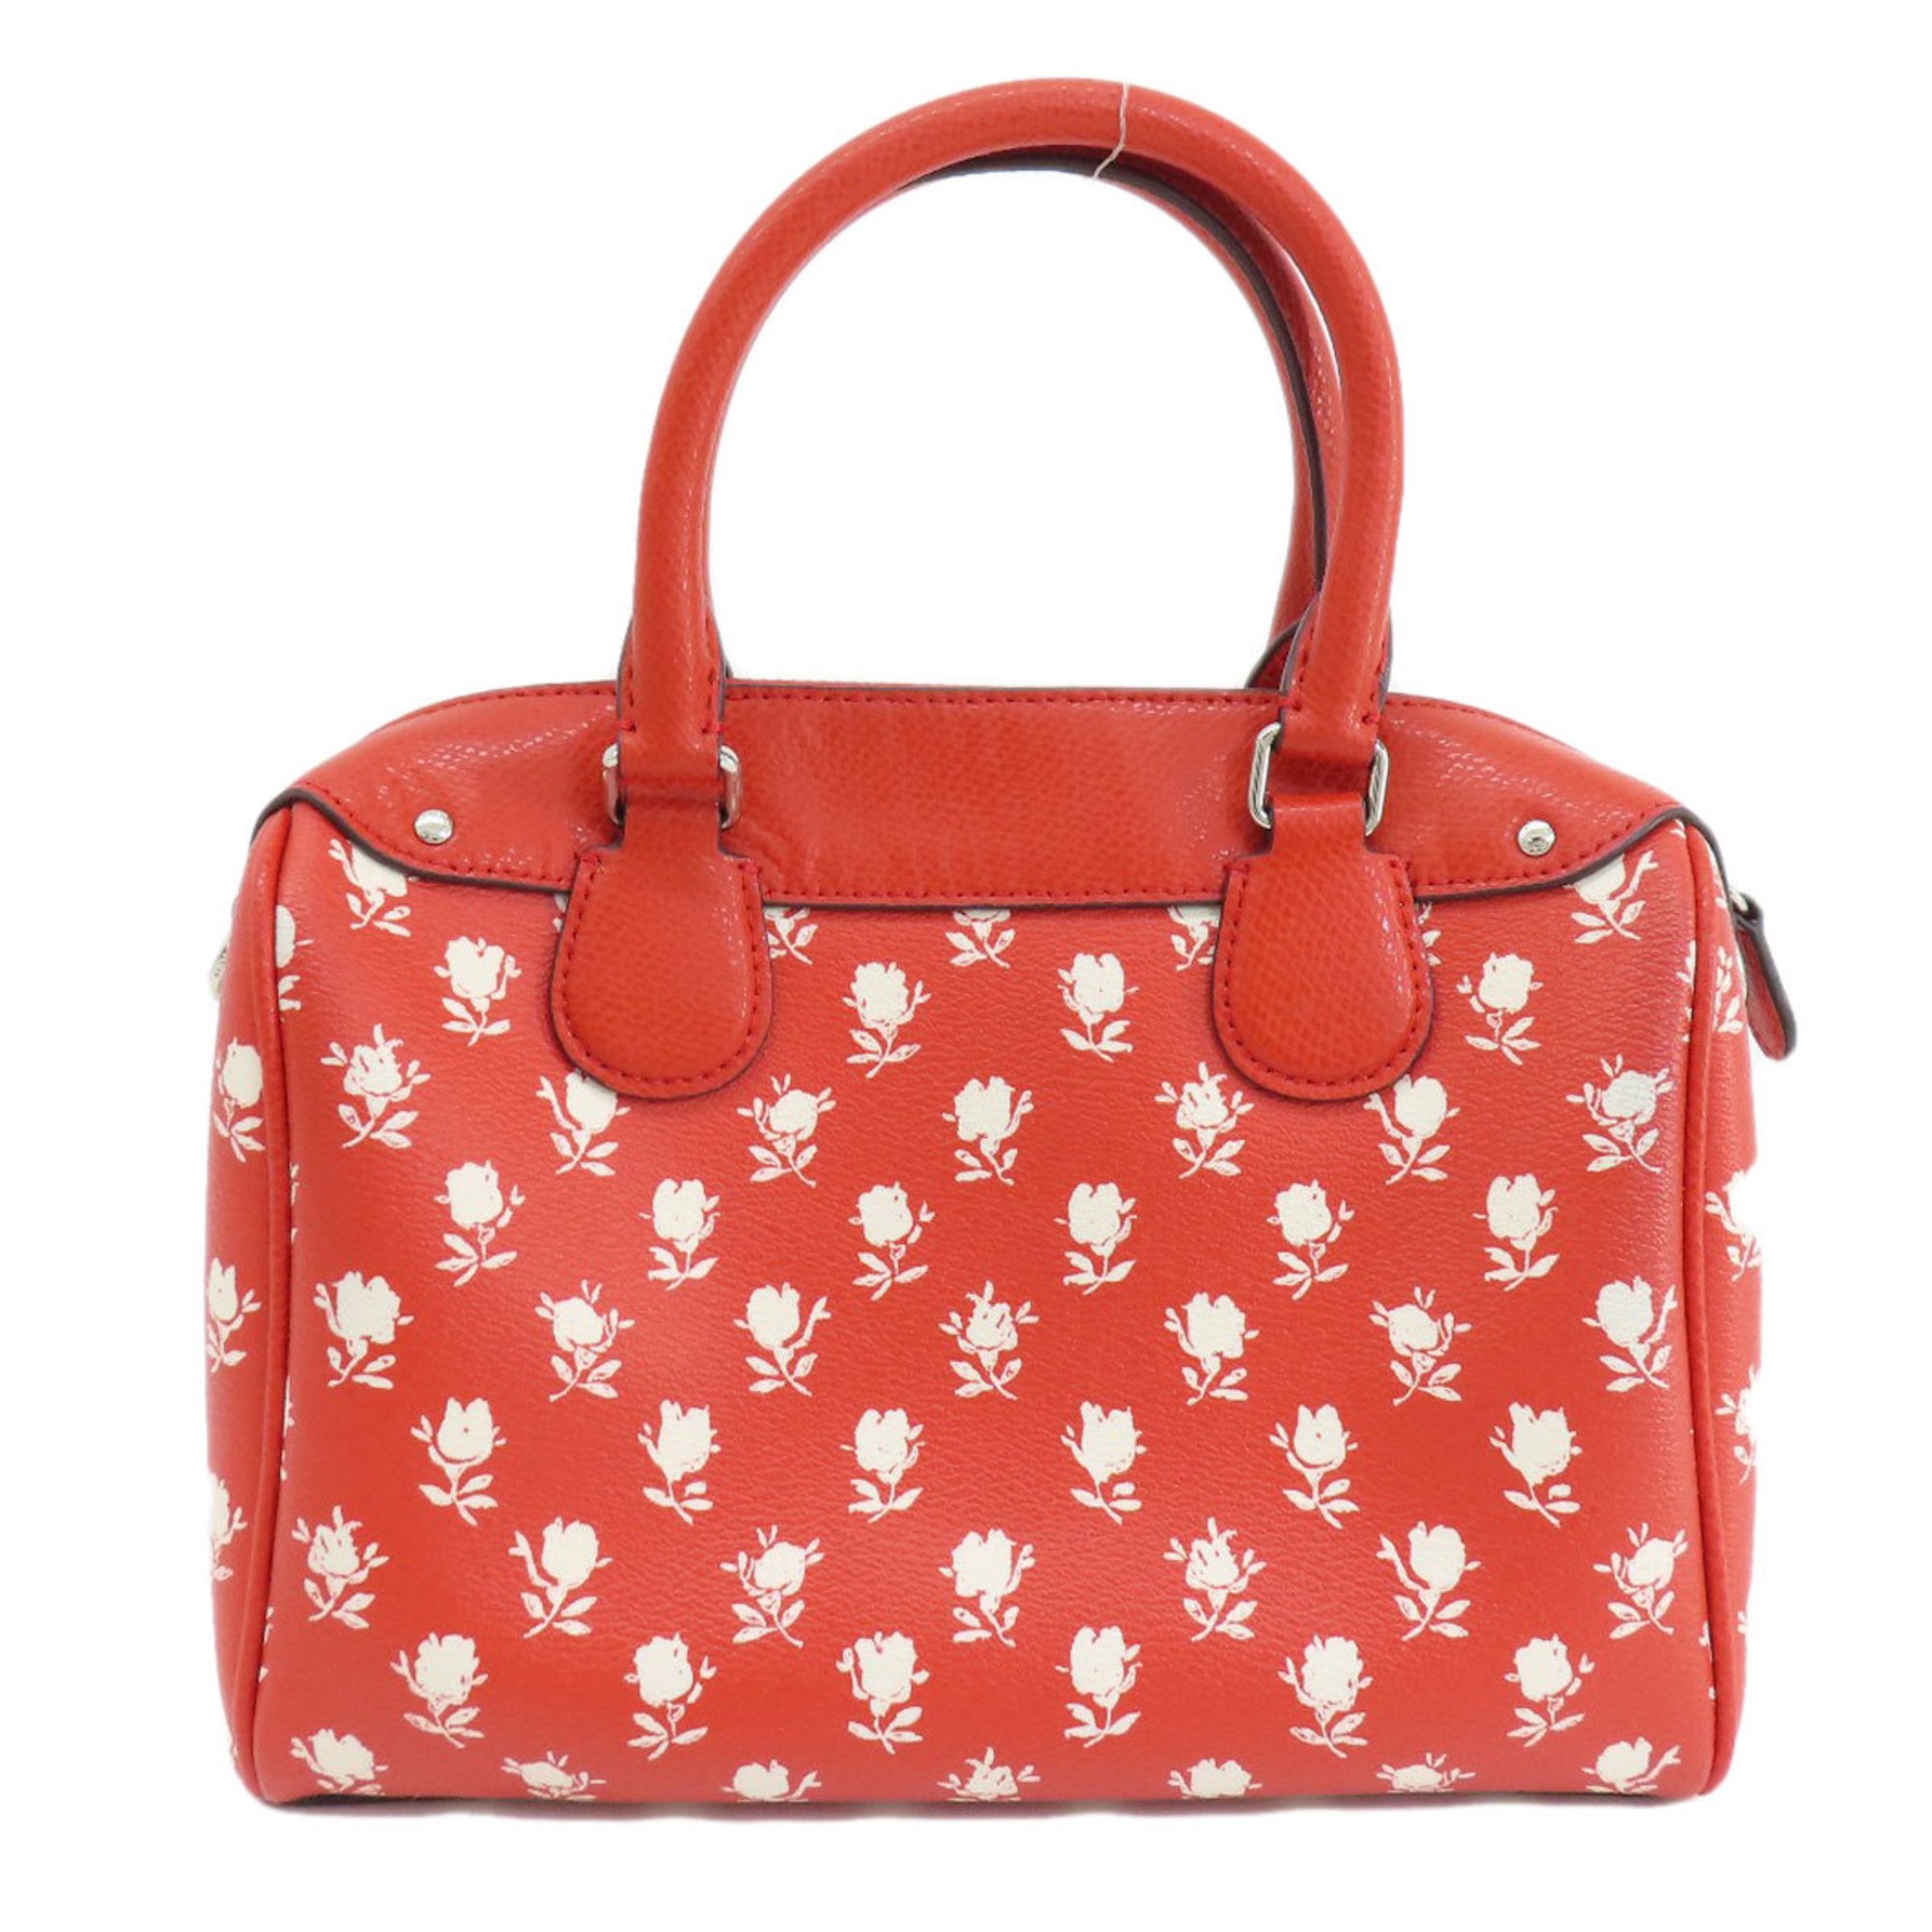 Coach F38160 Flower Motif Handbag for Women